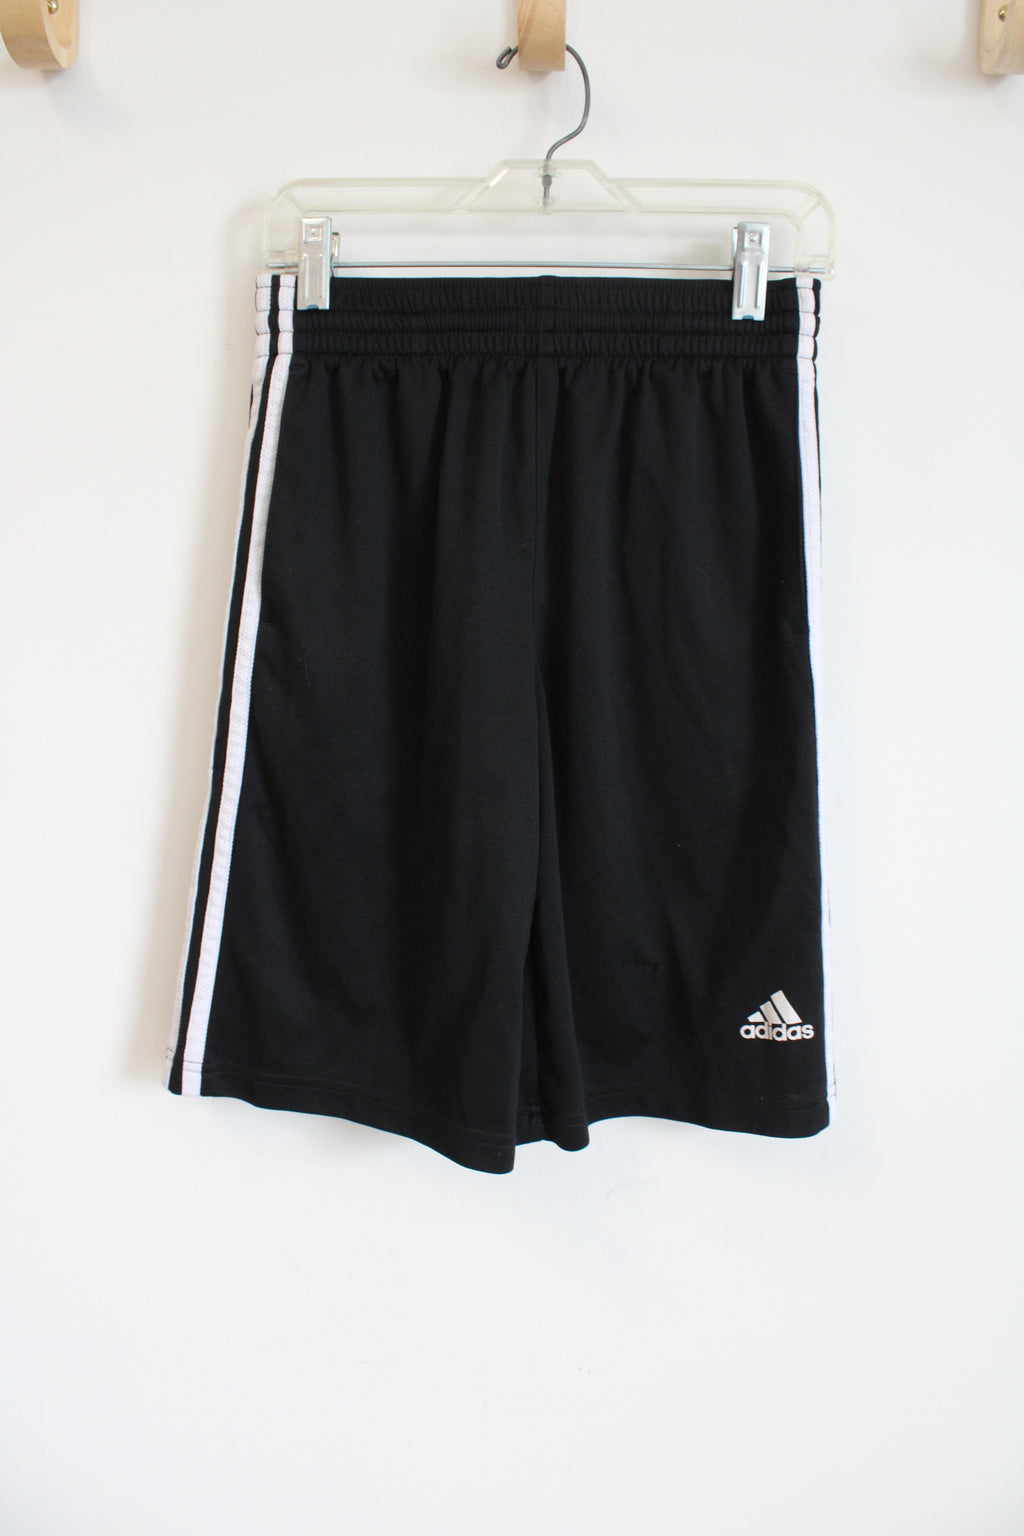 Adidas Black Athletic Shorts | Youth M (10/12)